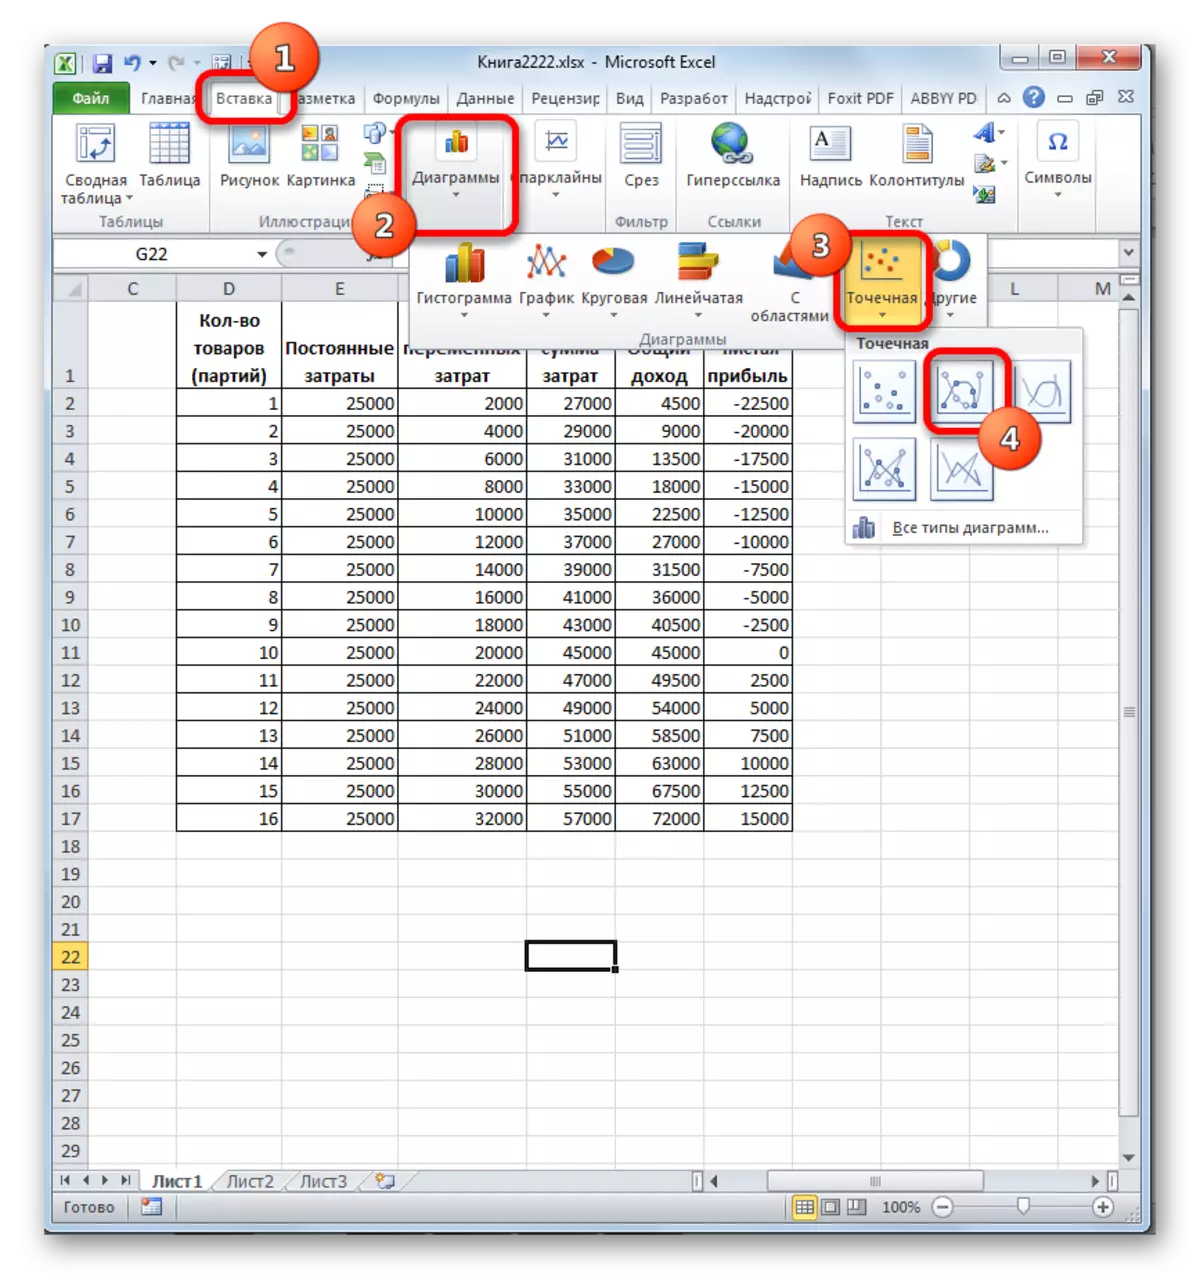 Hautatu Microsoft Excel-en diagrama mota